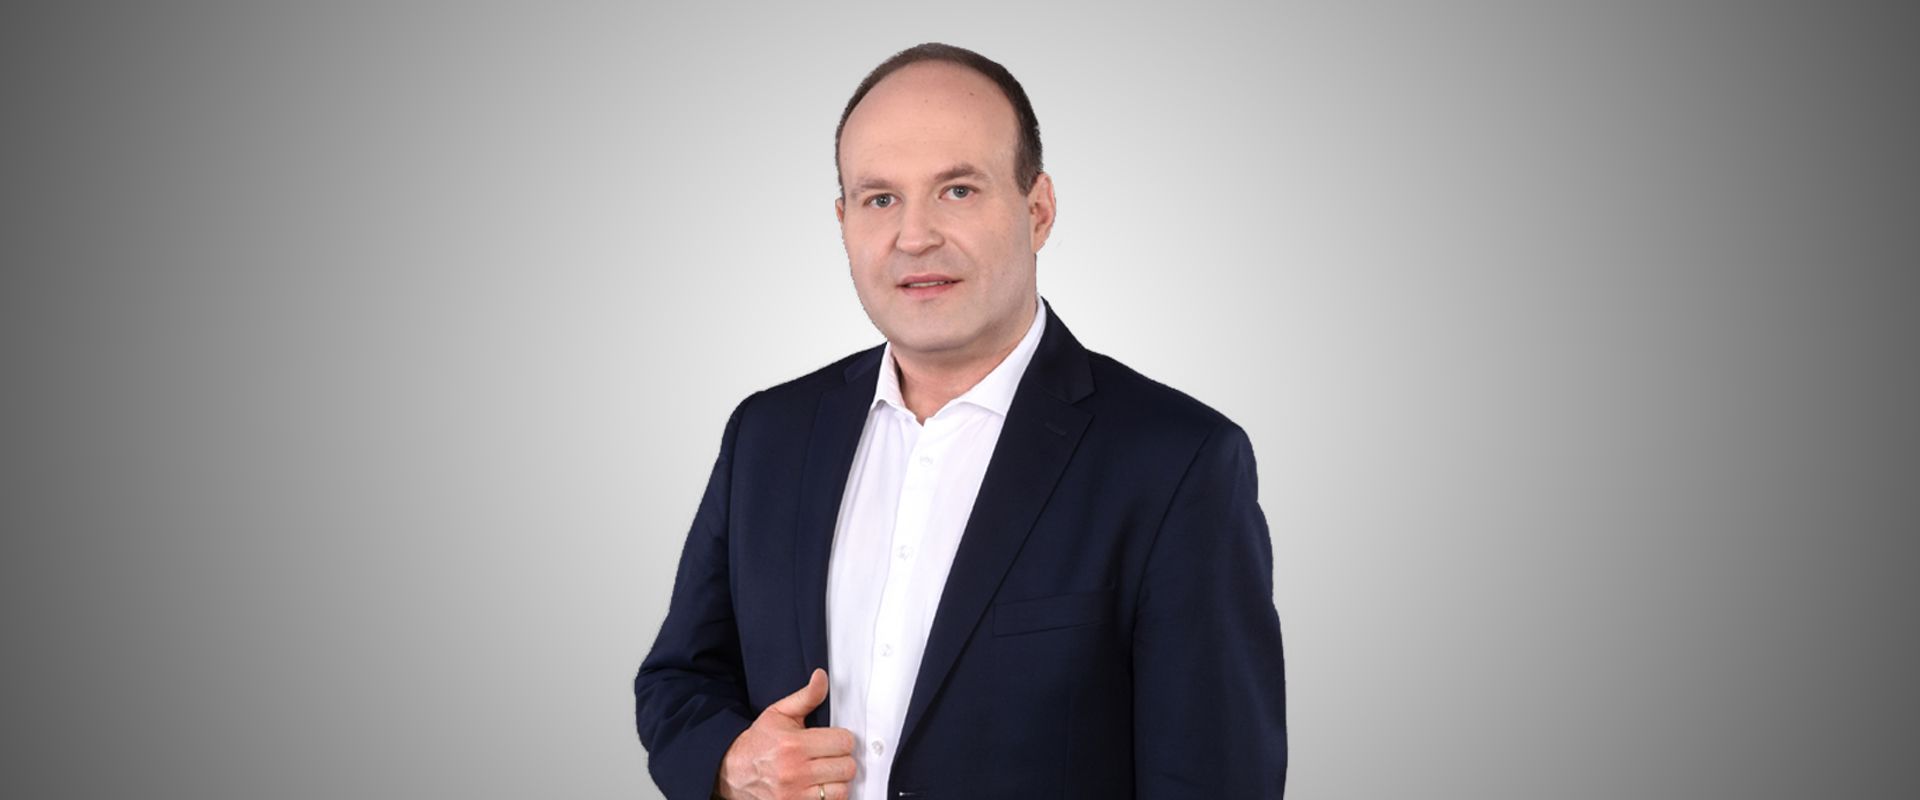 Maciej Ptaszyński, zakaz handlu, Polska Izba Handlu